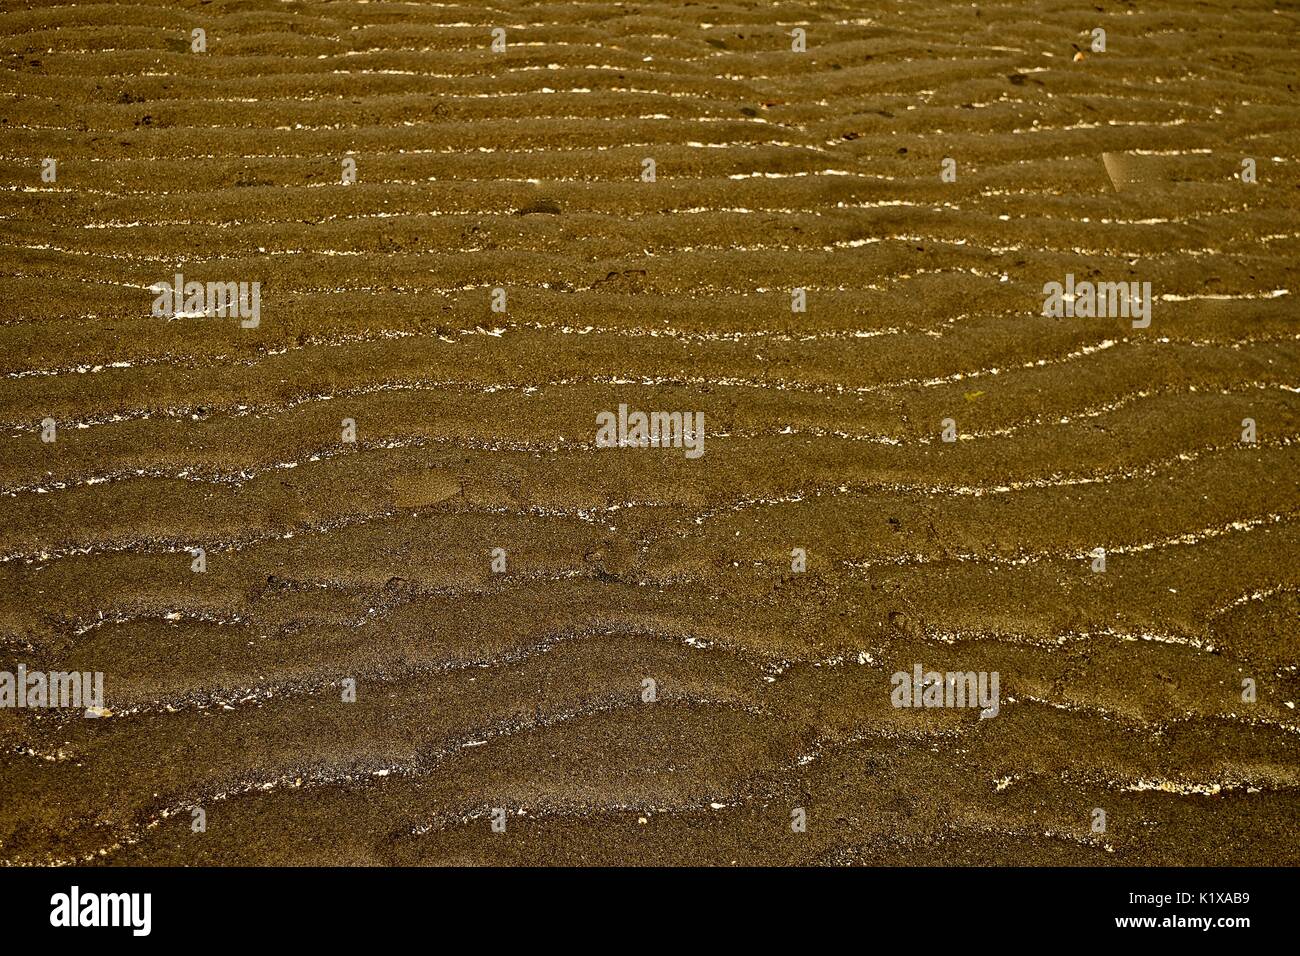 Ebbe am Puget Sound offenbart viele Dinge, die normalerweise unter Wasser verborgen. sand Markierungen von Ebbe und Flut am Strand. Stockfoto